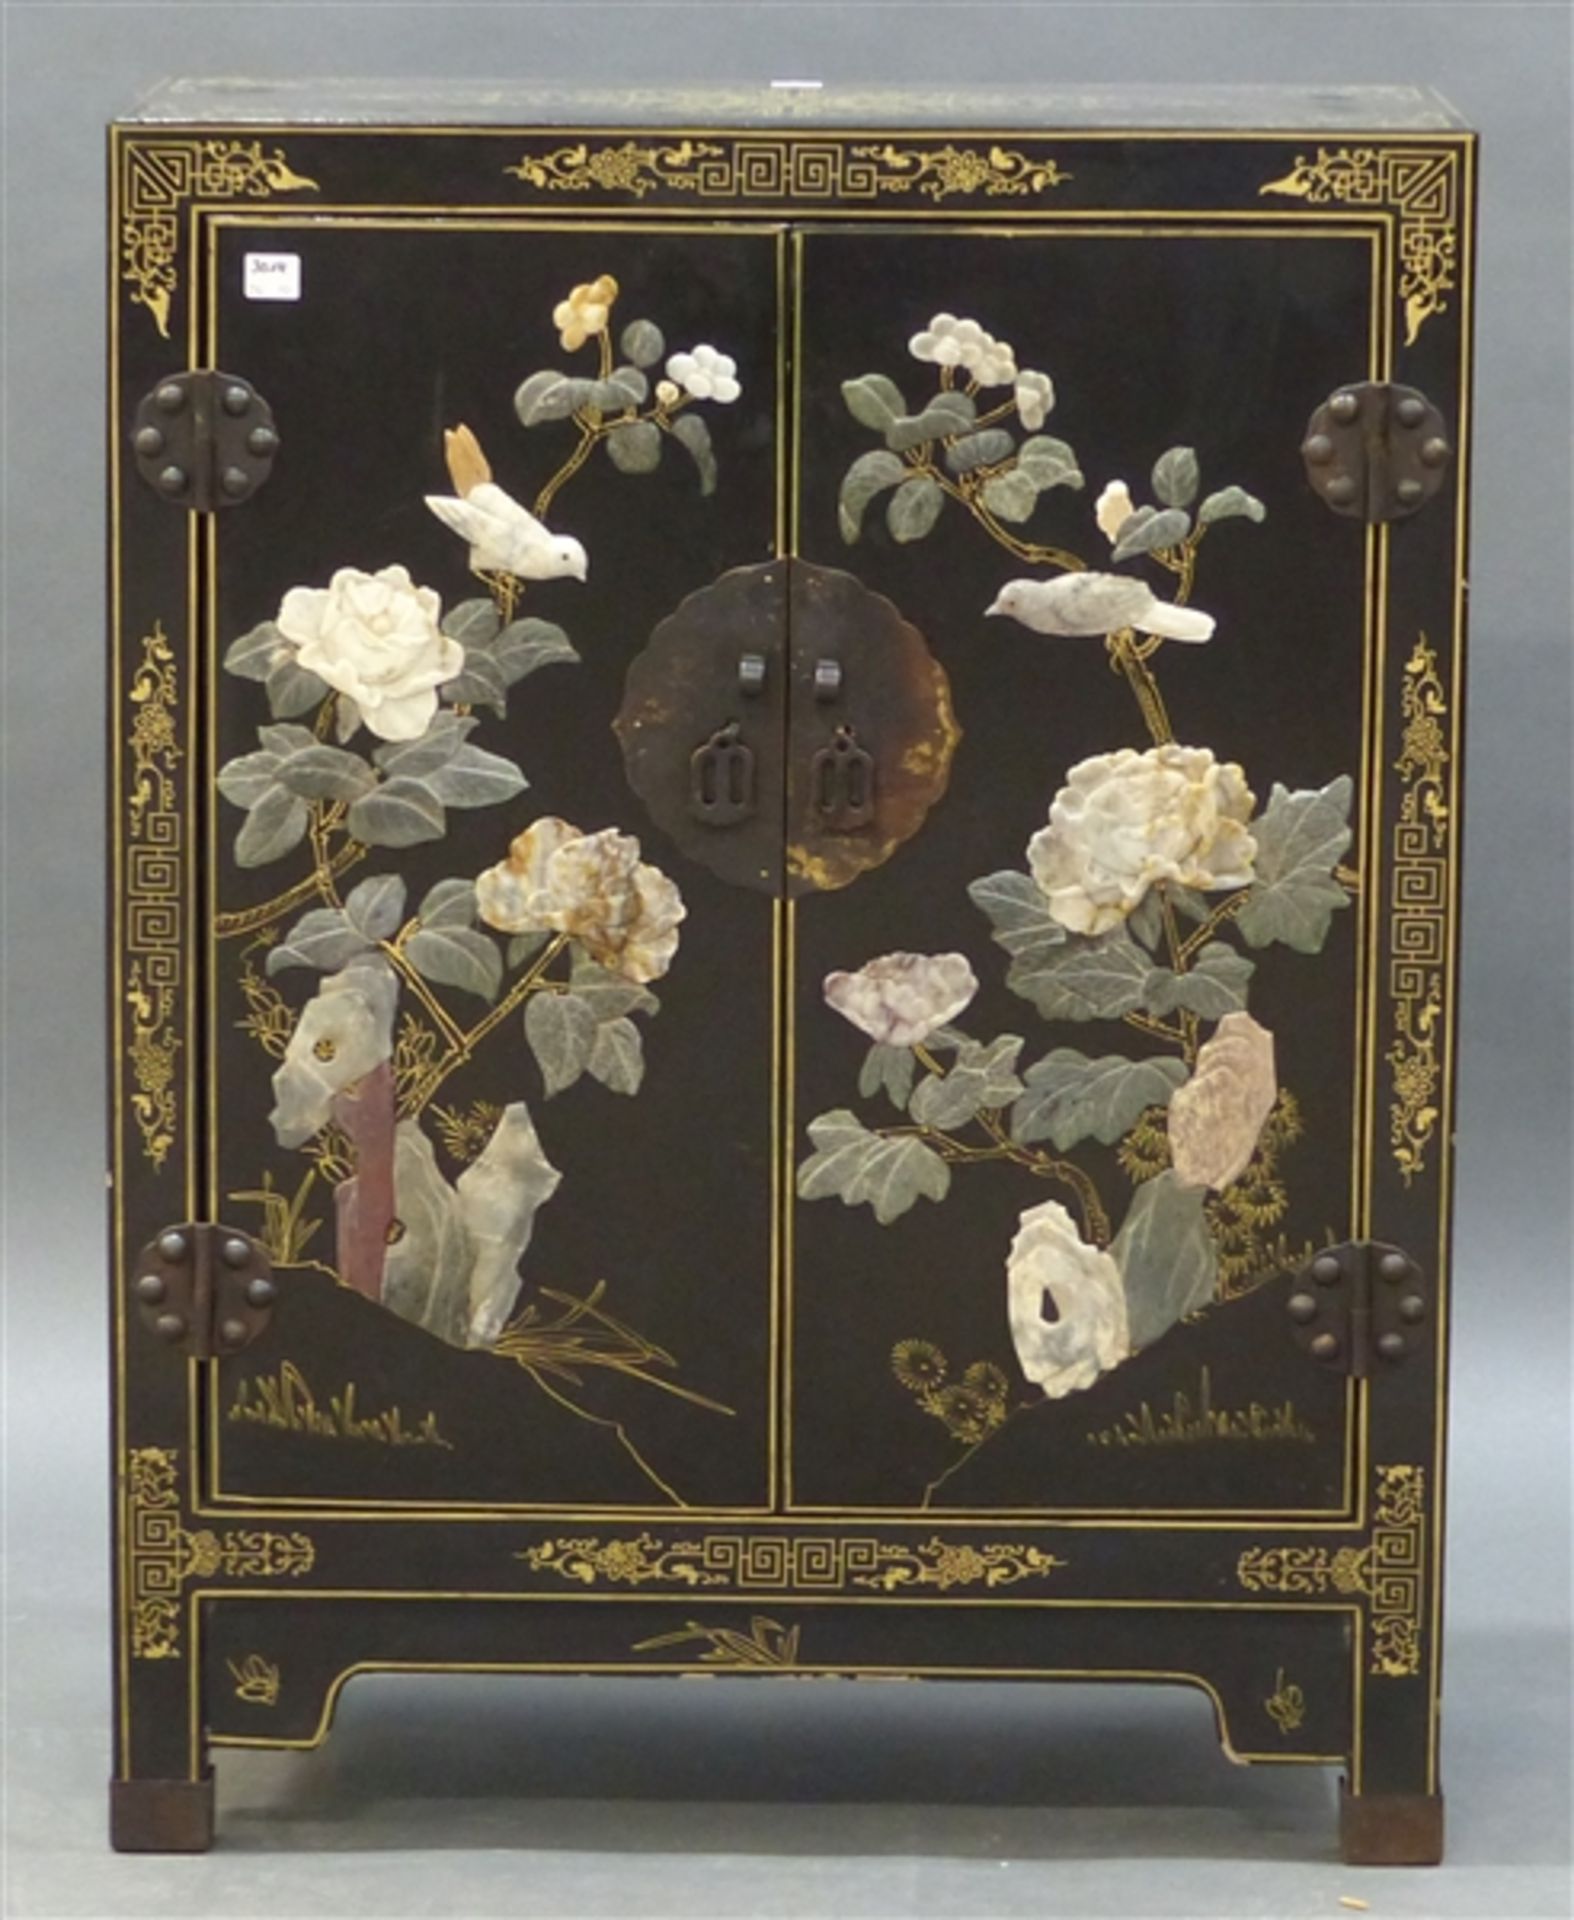 Zierschränkchen China, 20. Jh., Schwarzlack, Golddekor, aufgelegte Edelsteinarbeiten, h 77 cm, b